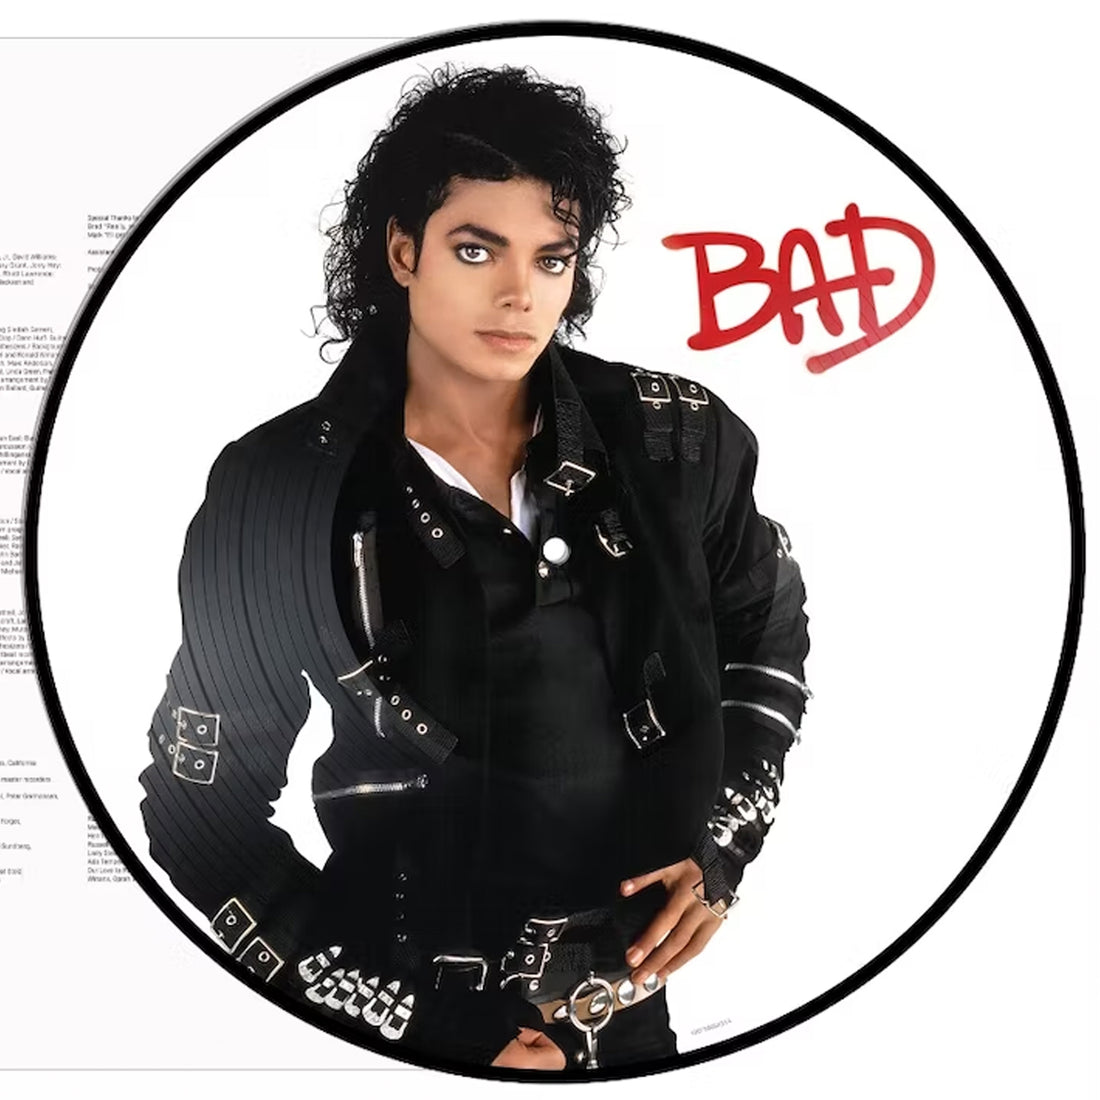 Michael Jackson "Bad" LP Picture Disc Vinyl